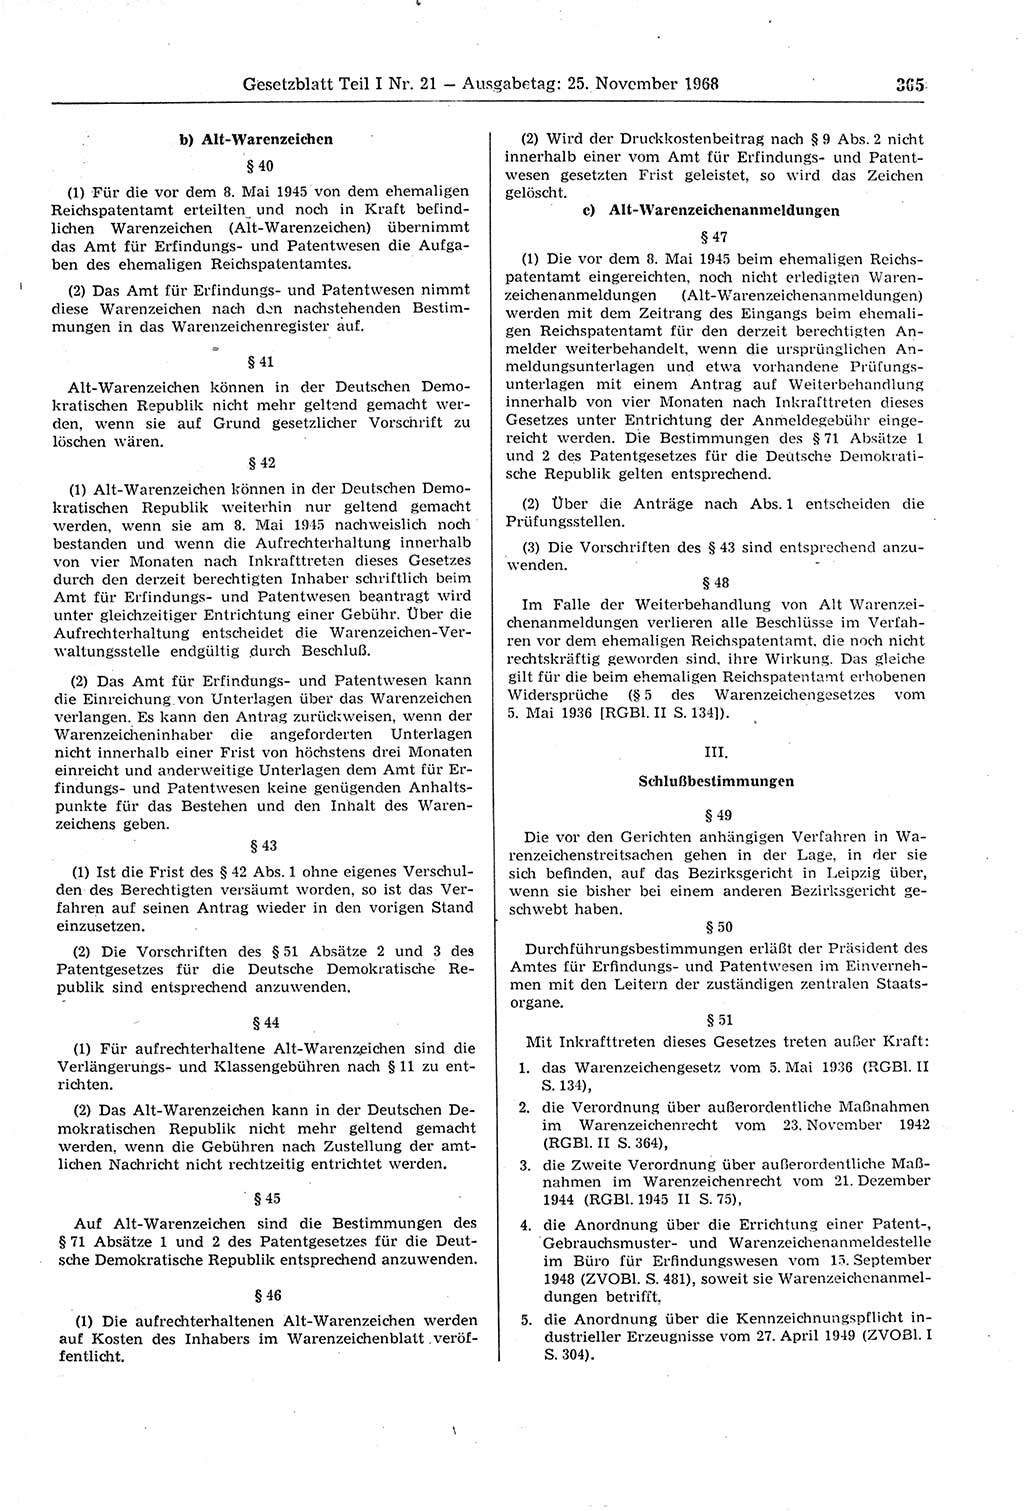 Gesetzblatt (GBl.) der Deutschen Demokratischen Republik (DDR) Teil Ⅰ 1968, Seite 365 (GBl. DDR Ⅰ 1968, S. 365)